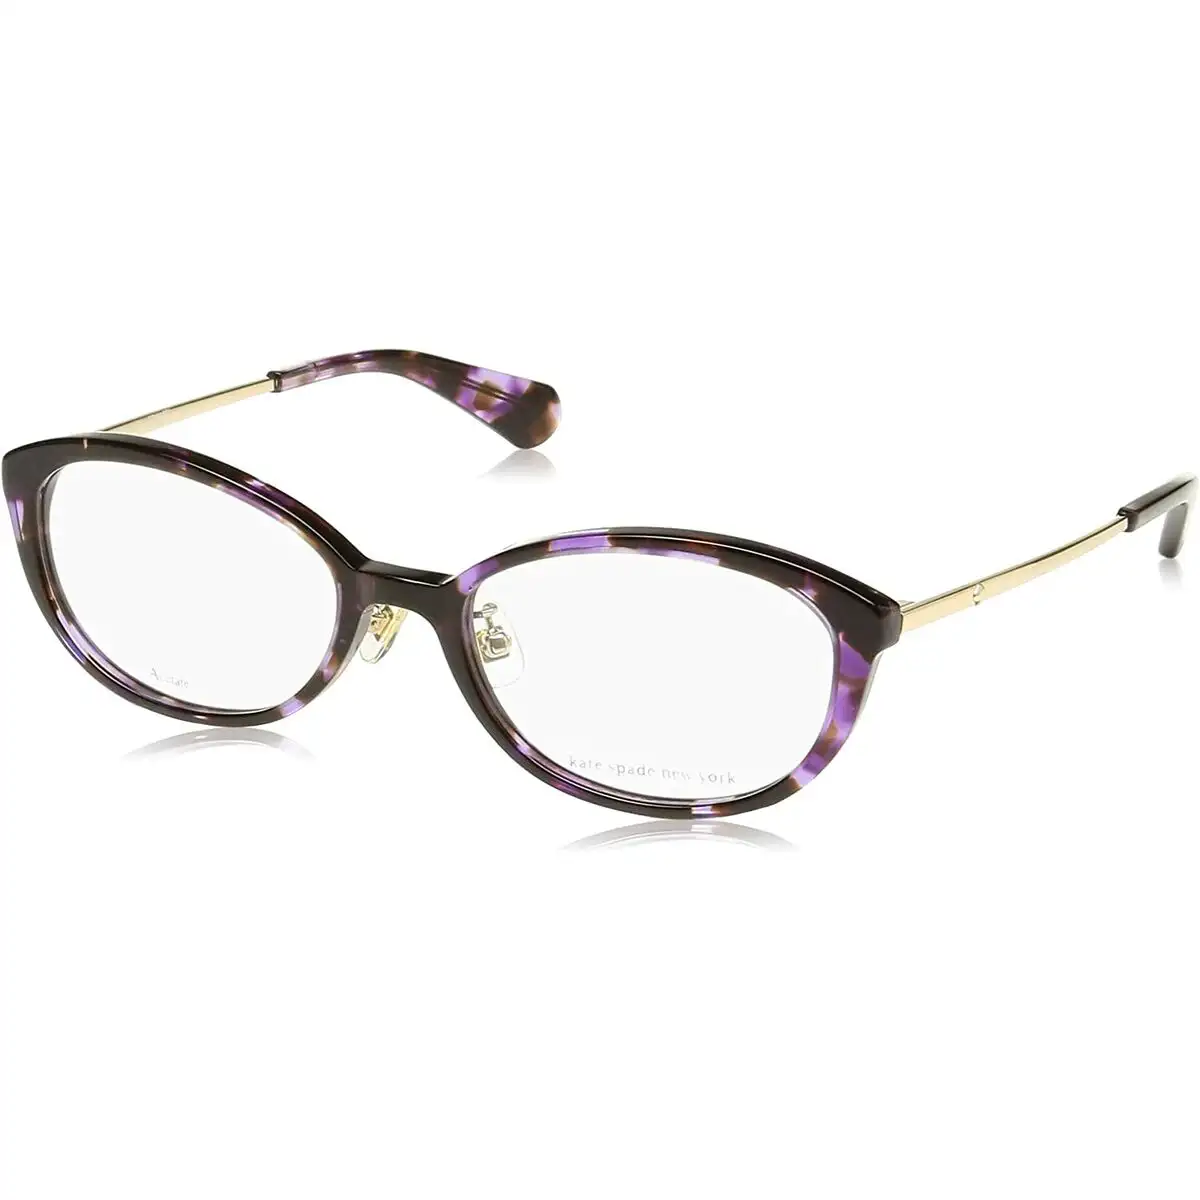 Monture de lunettes femme kate spade ladanna_f_7715. Bienvenue sur DIAYTAR SENEGAL - Votre Fenêtre sur le Shopping Moderne. Parcourez notre boutique en ligne et découvrez des produits qui incarnent l'évolution du style et de la qualité.